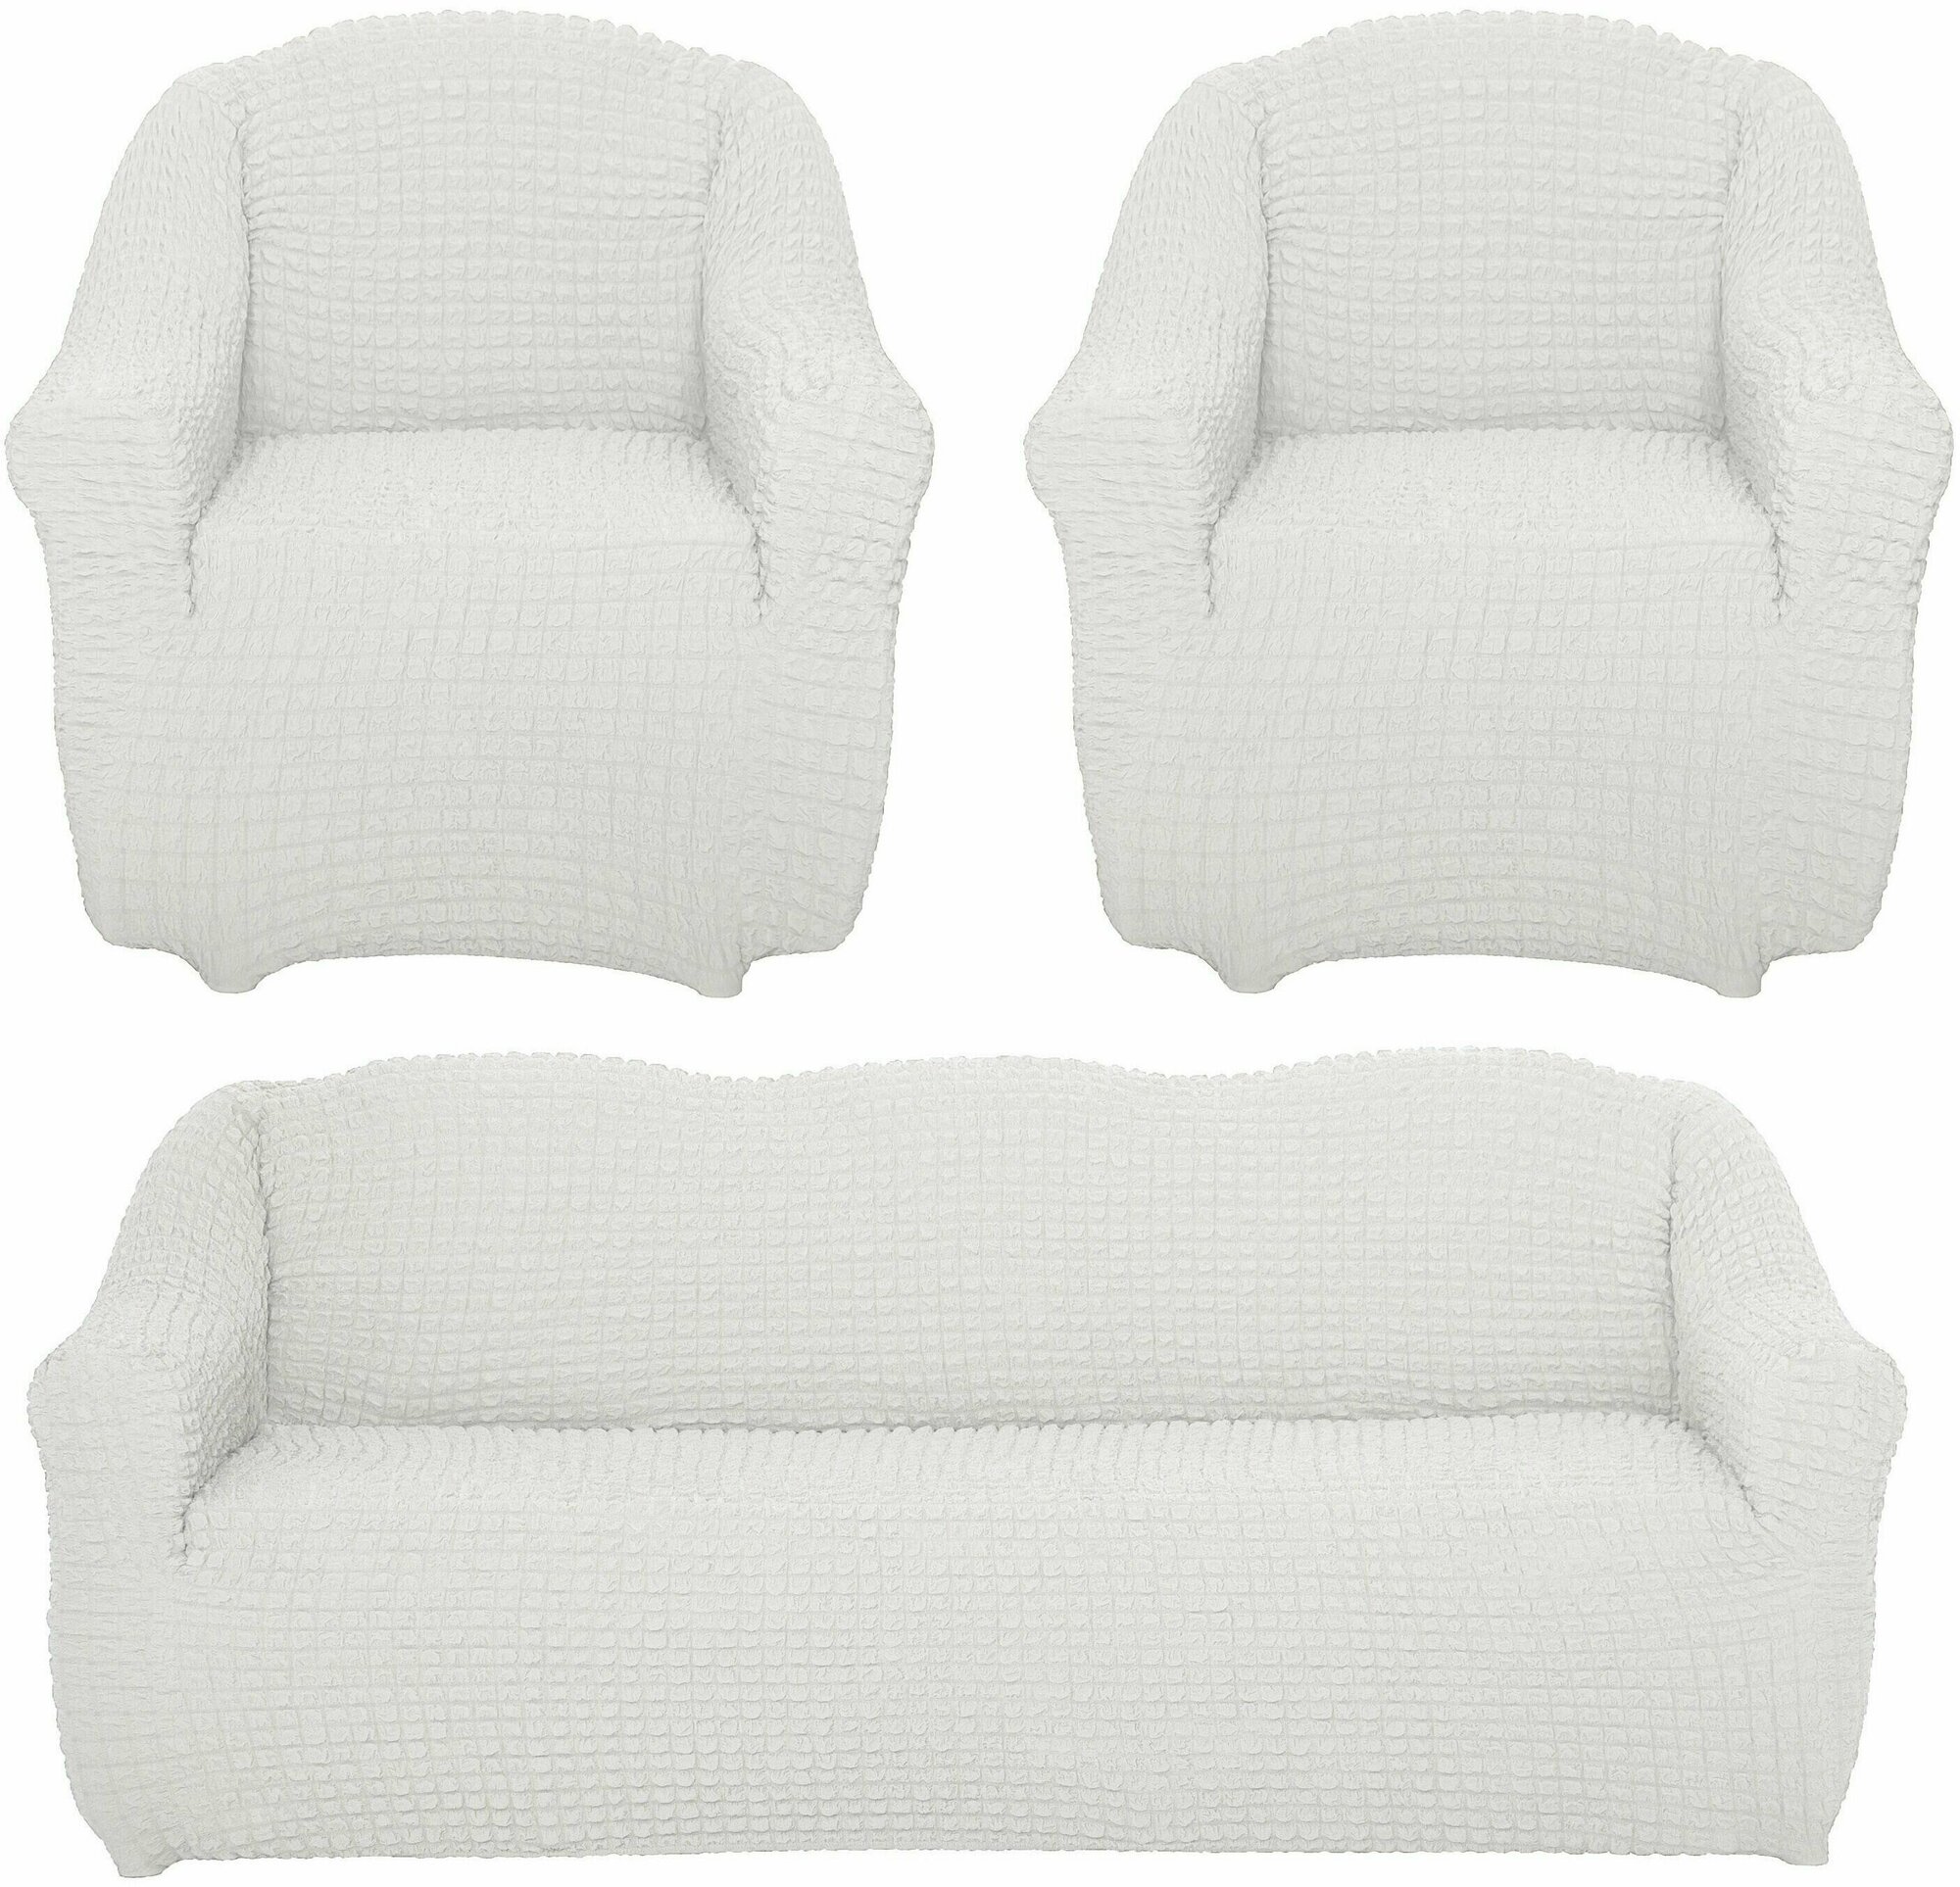 Чехол на диван и 2 кресла без оборки, диван трехместный, на резинке, универсальный, чехол для мягкой мебели, комплект, накидка дивандек на диван и кресло